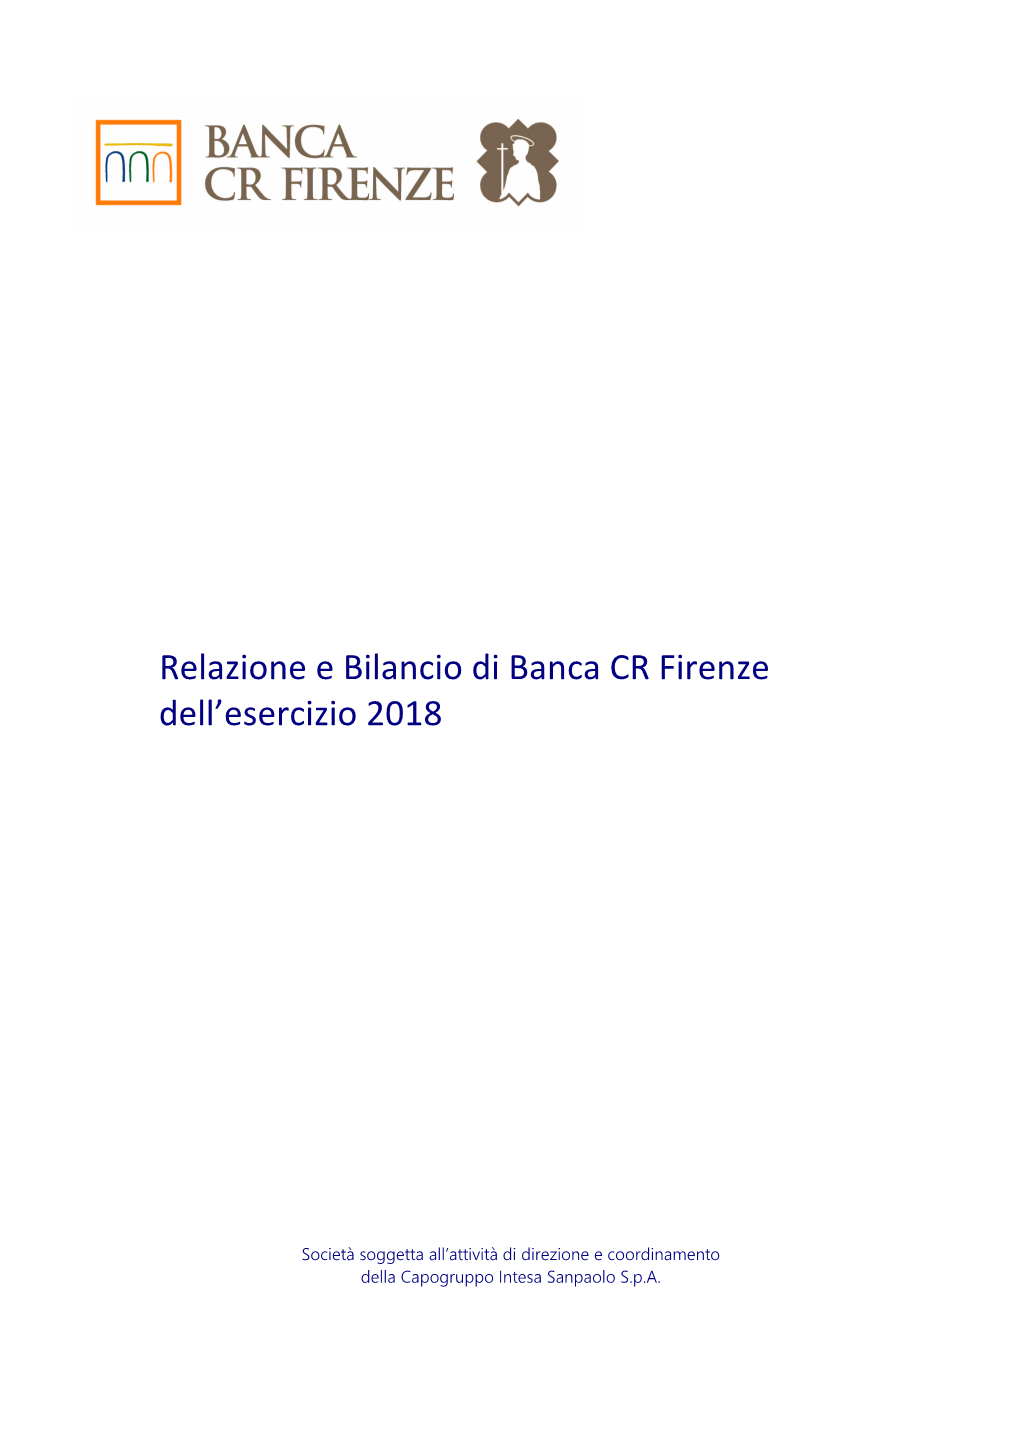 Relazione E Bilancio Di Banca CR Firenze Dell'esercizio 2018